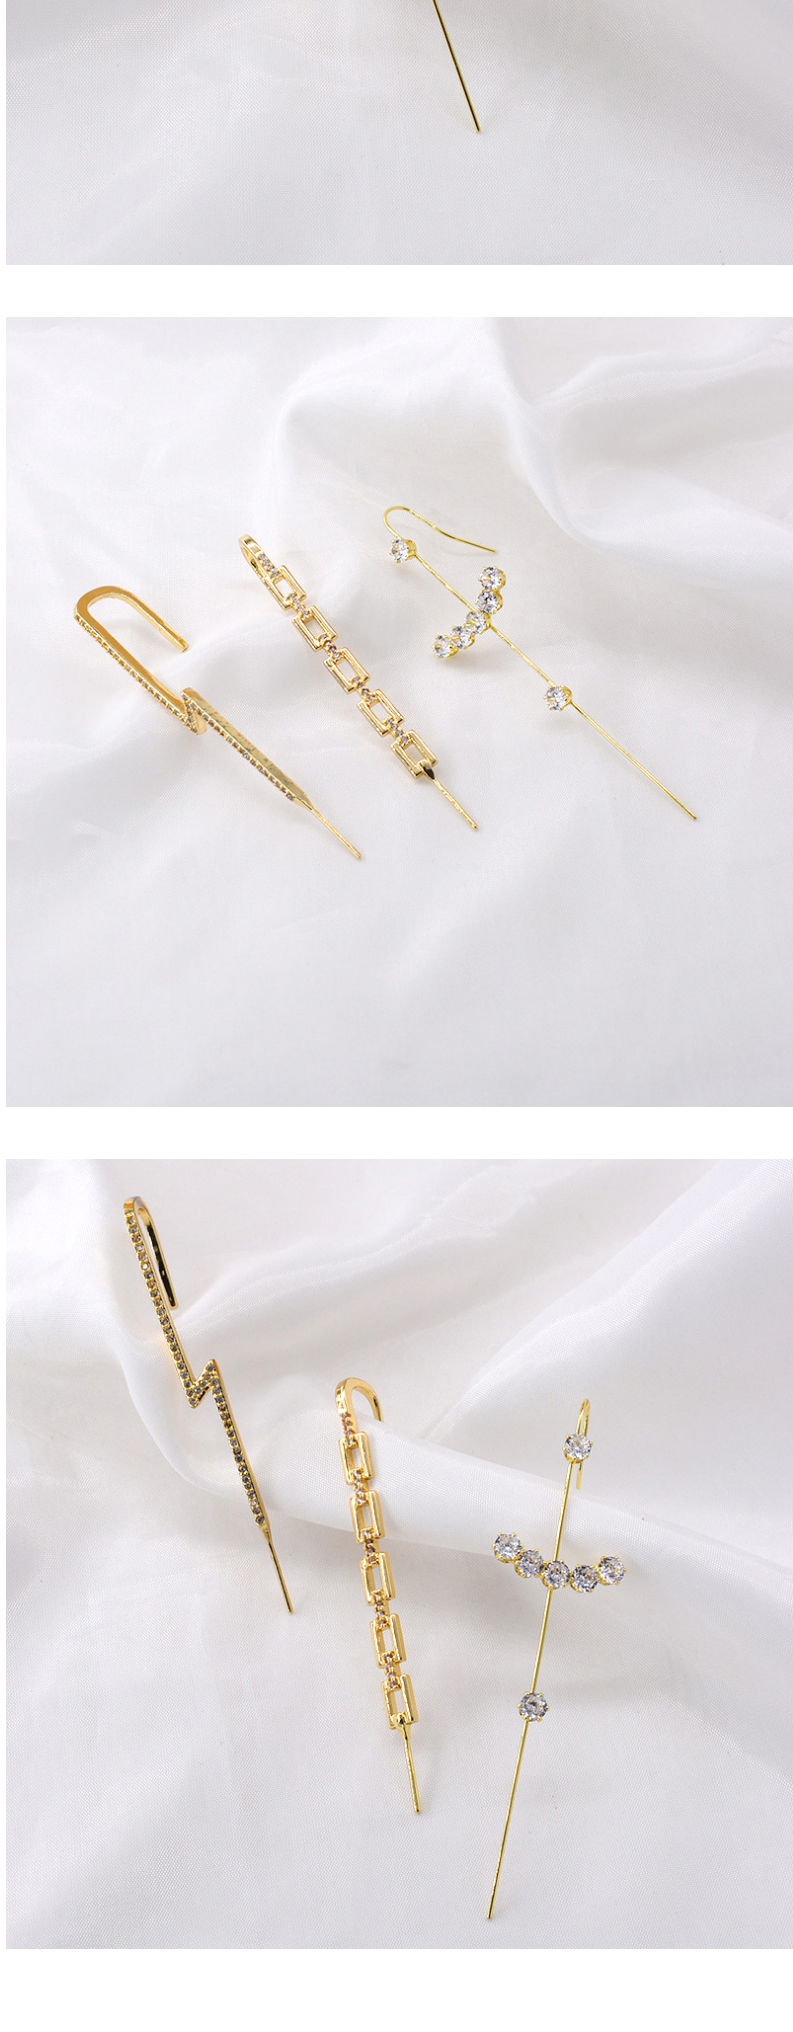 Fashion Lightning Micro-set Zircon Geometric Long Lightning Earrings,Stud Earrings